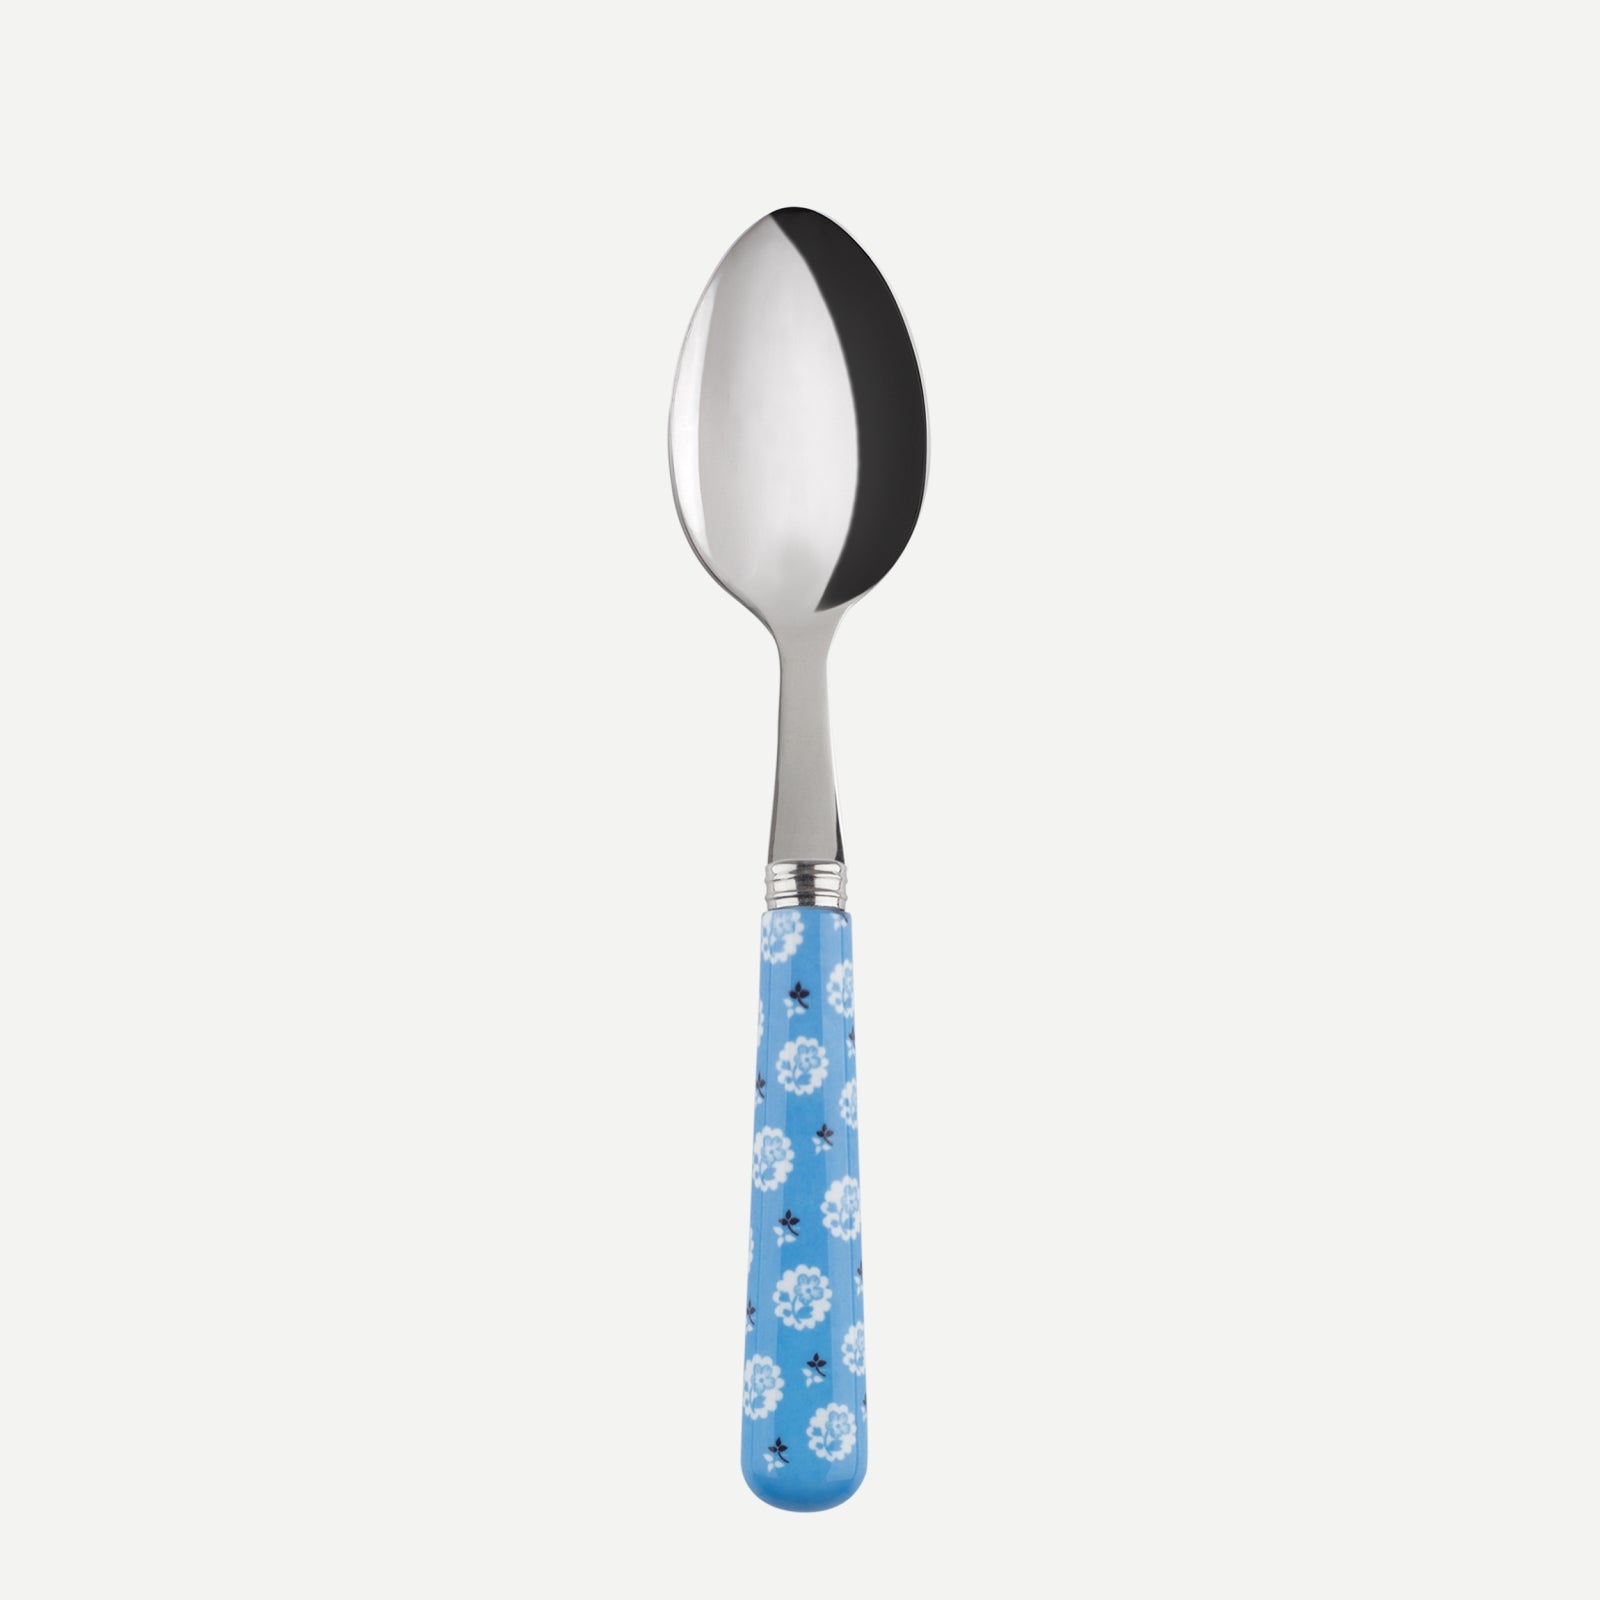 Teaspoon - Provencal - Light blue